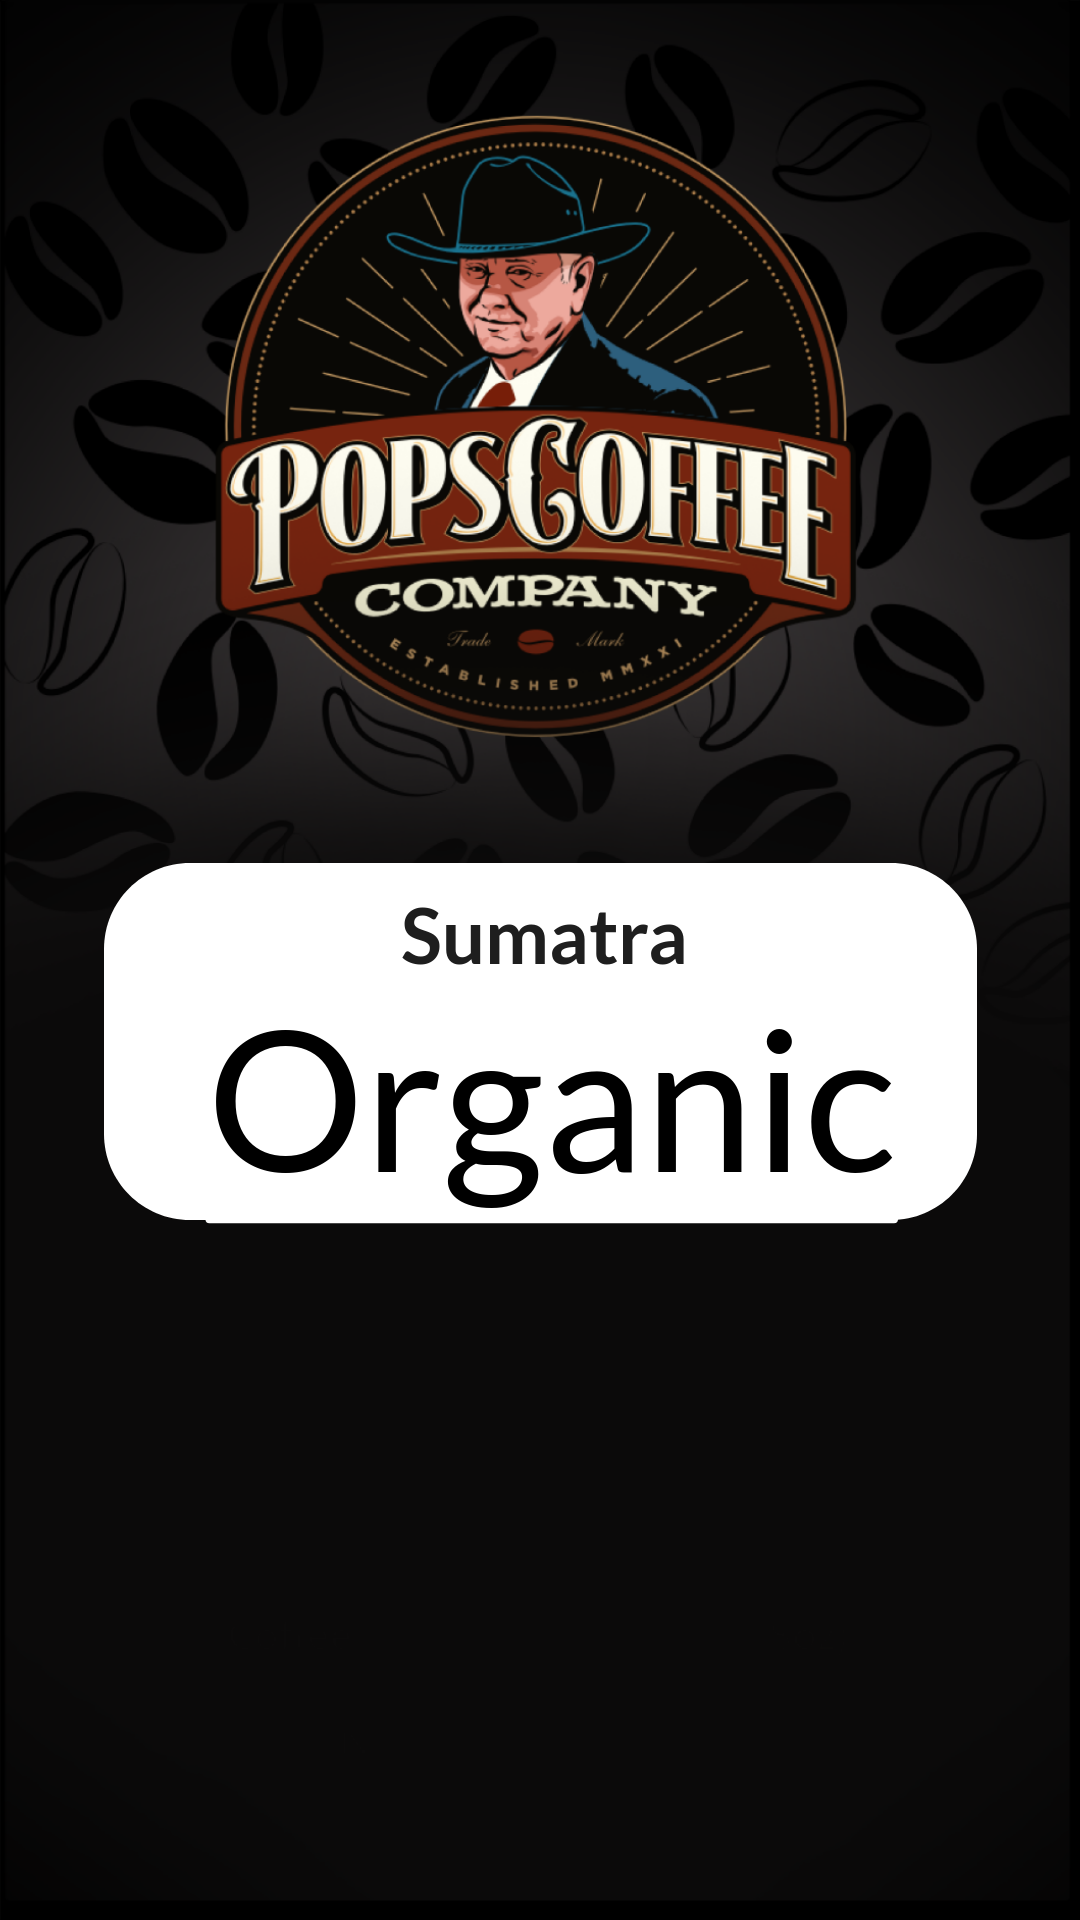 Sumatra - Organic